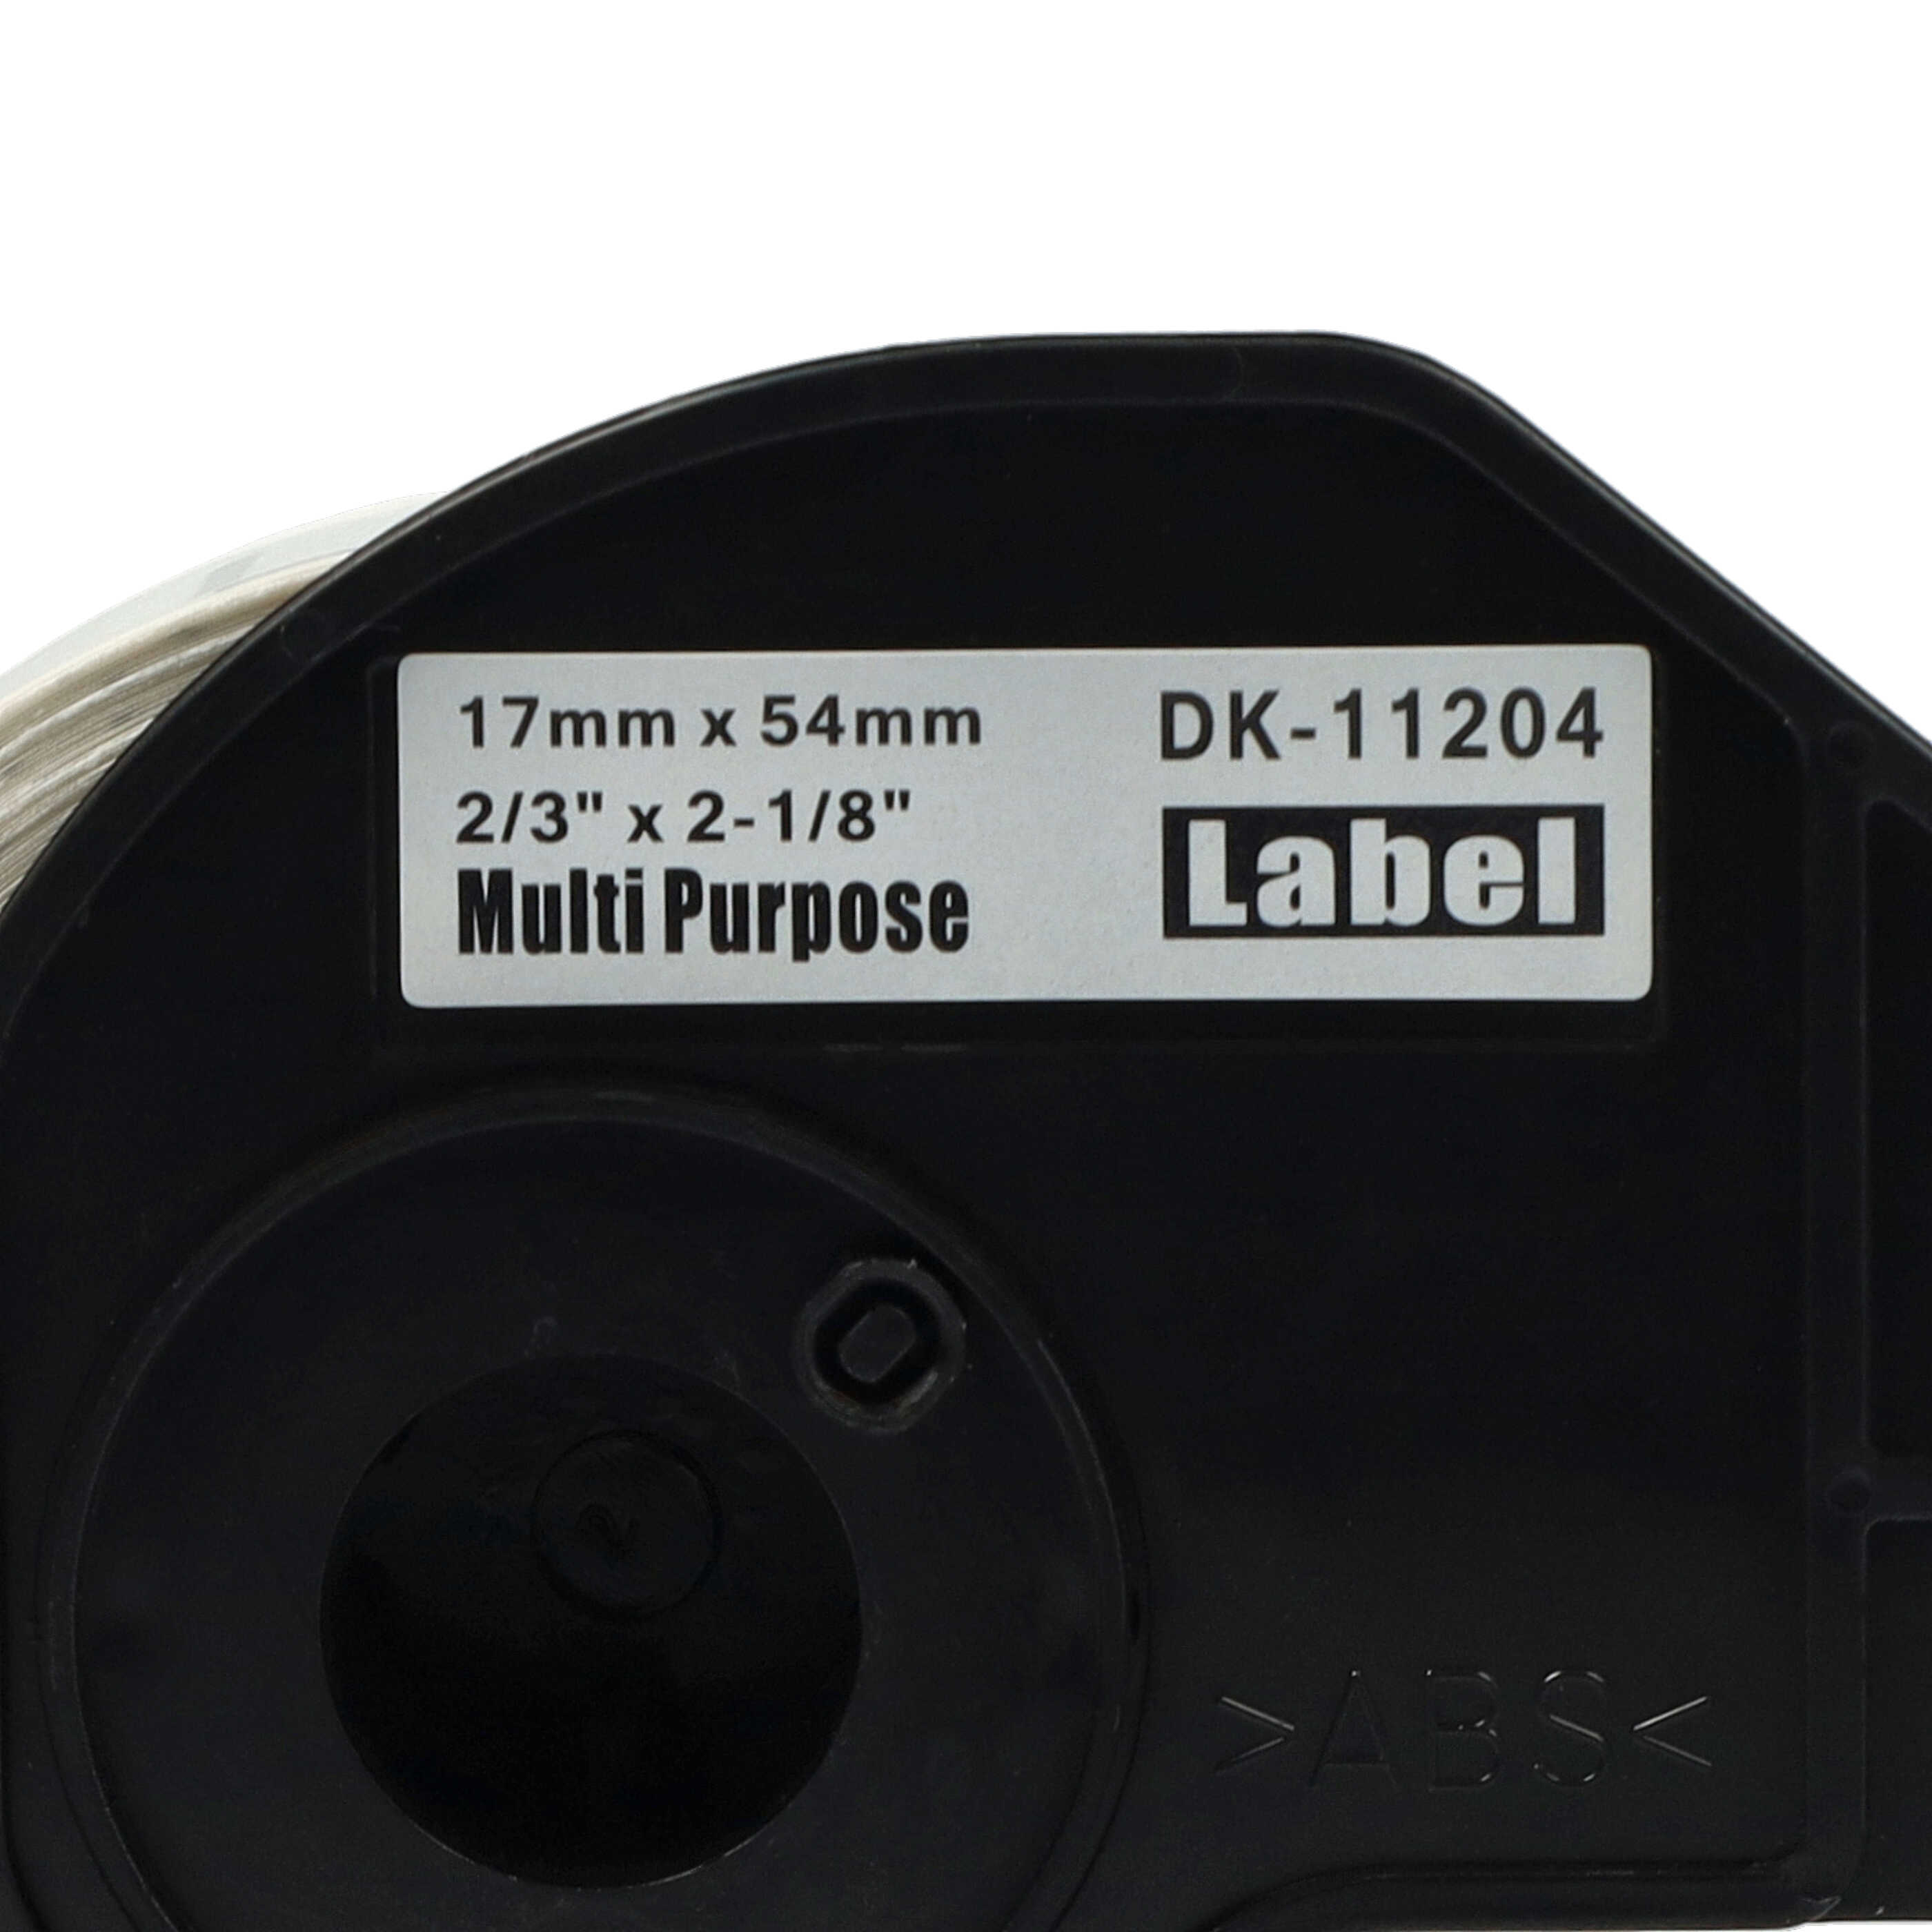 10x Étiquettes remplacent Brother DK-11204 pour imprimante étiqueteuse - 17mm x 54mm + support